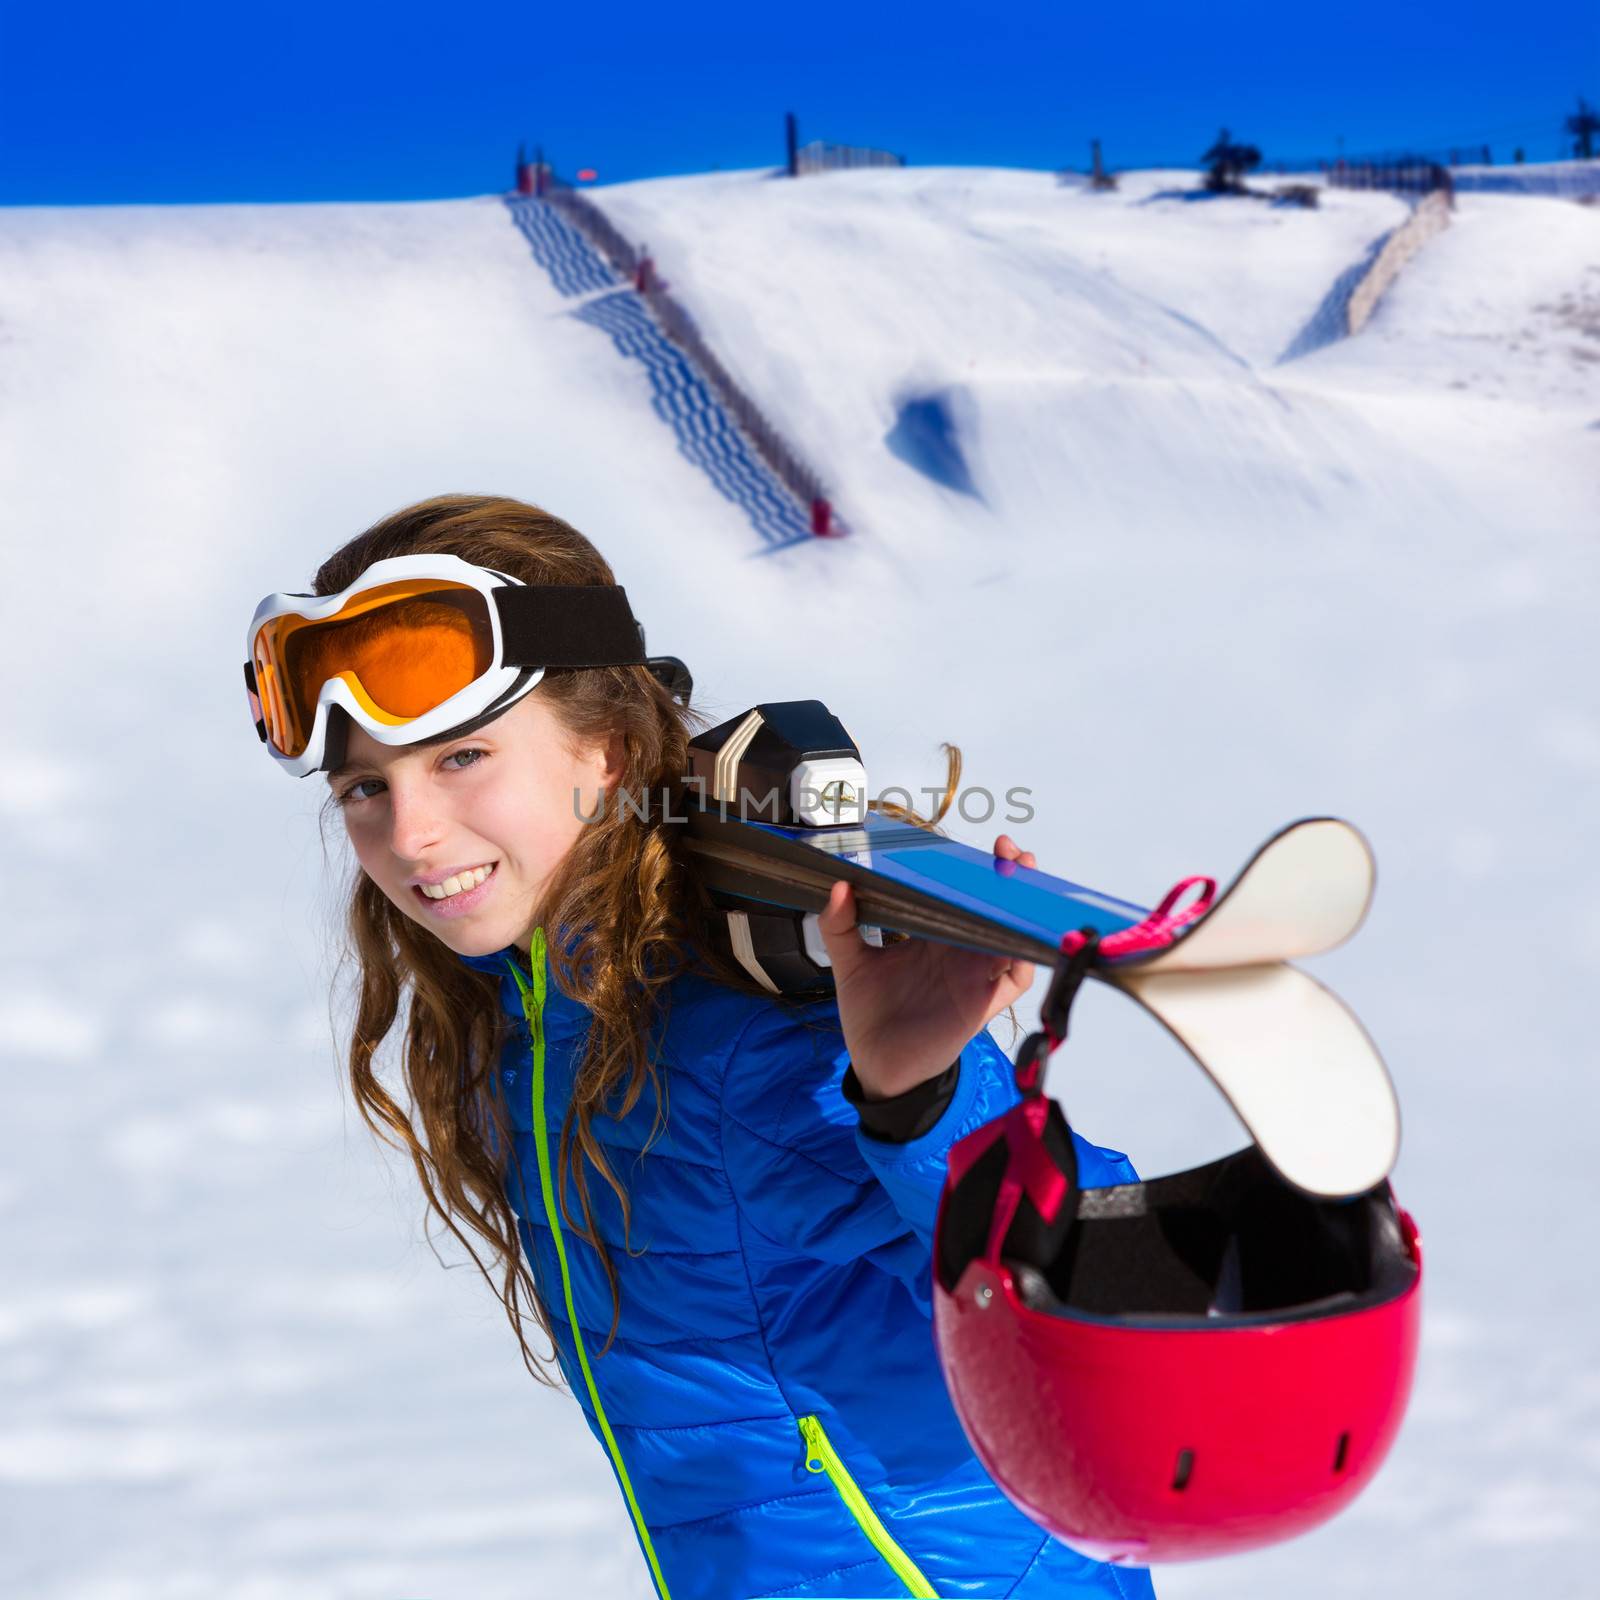 Kid girl winter snow holding ski equipment helmet goggles